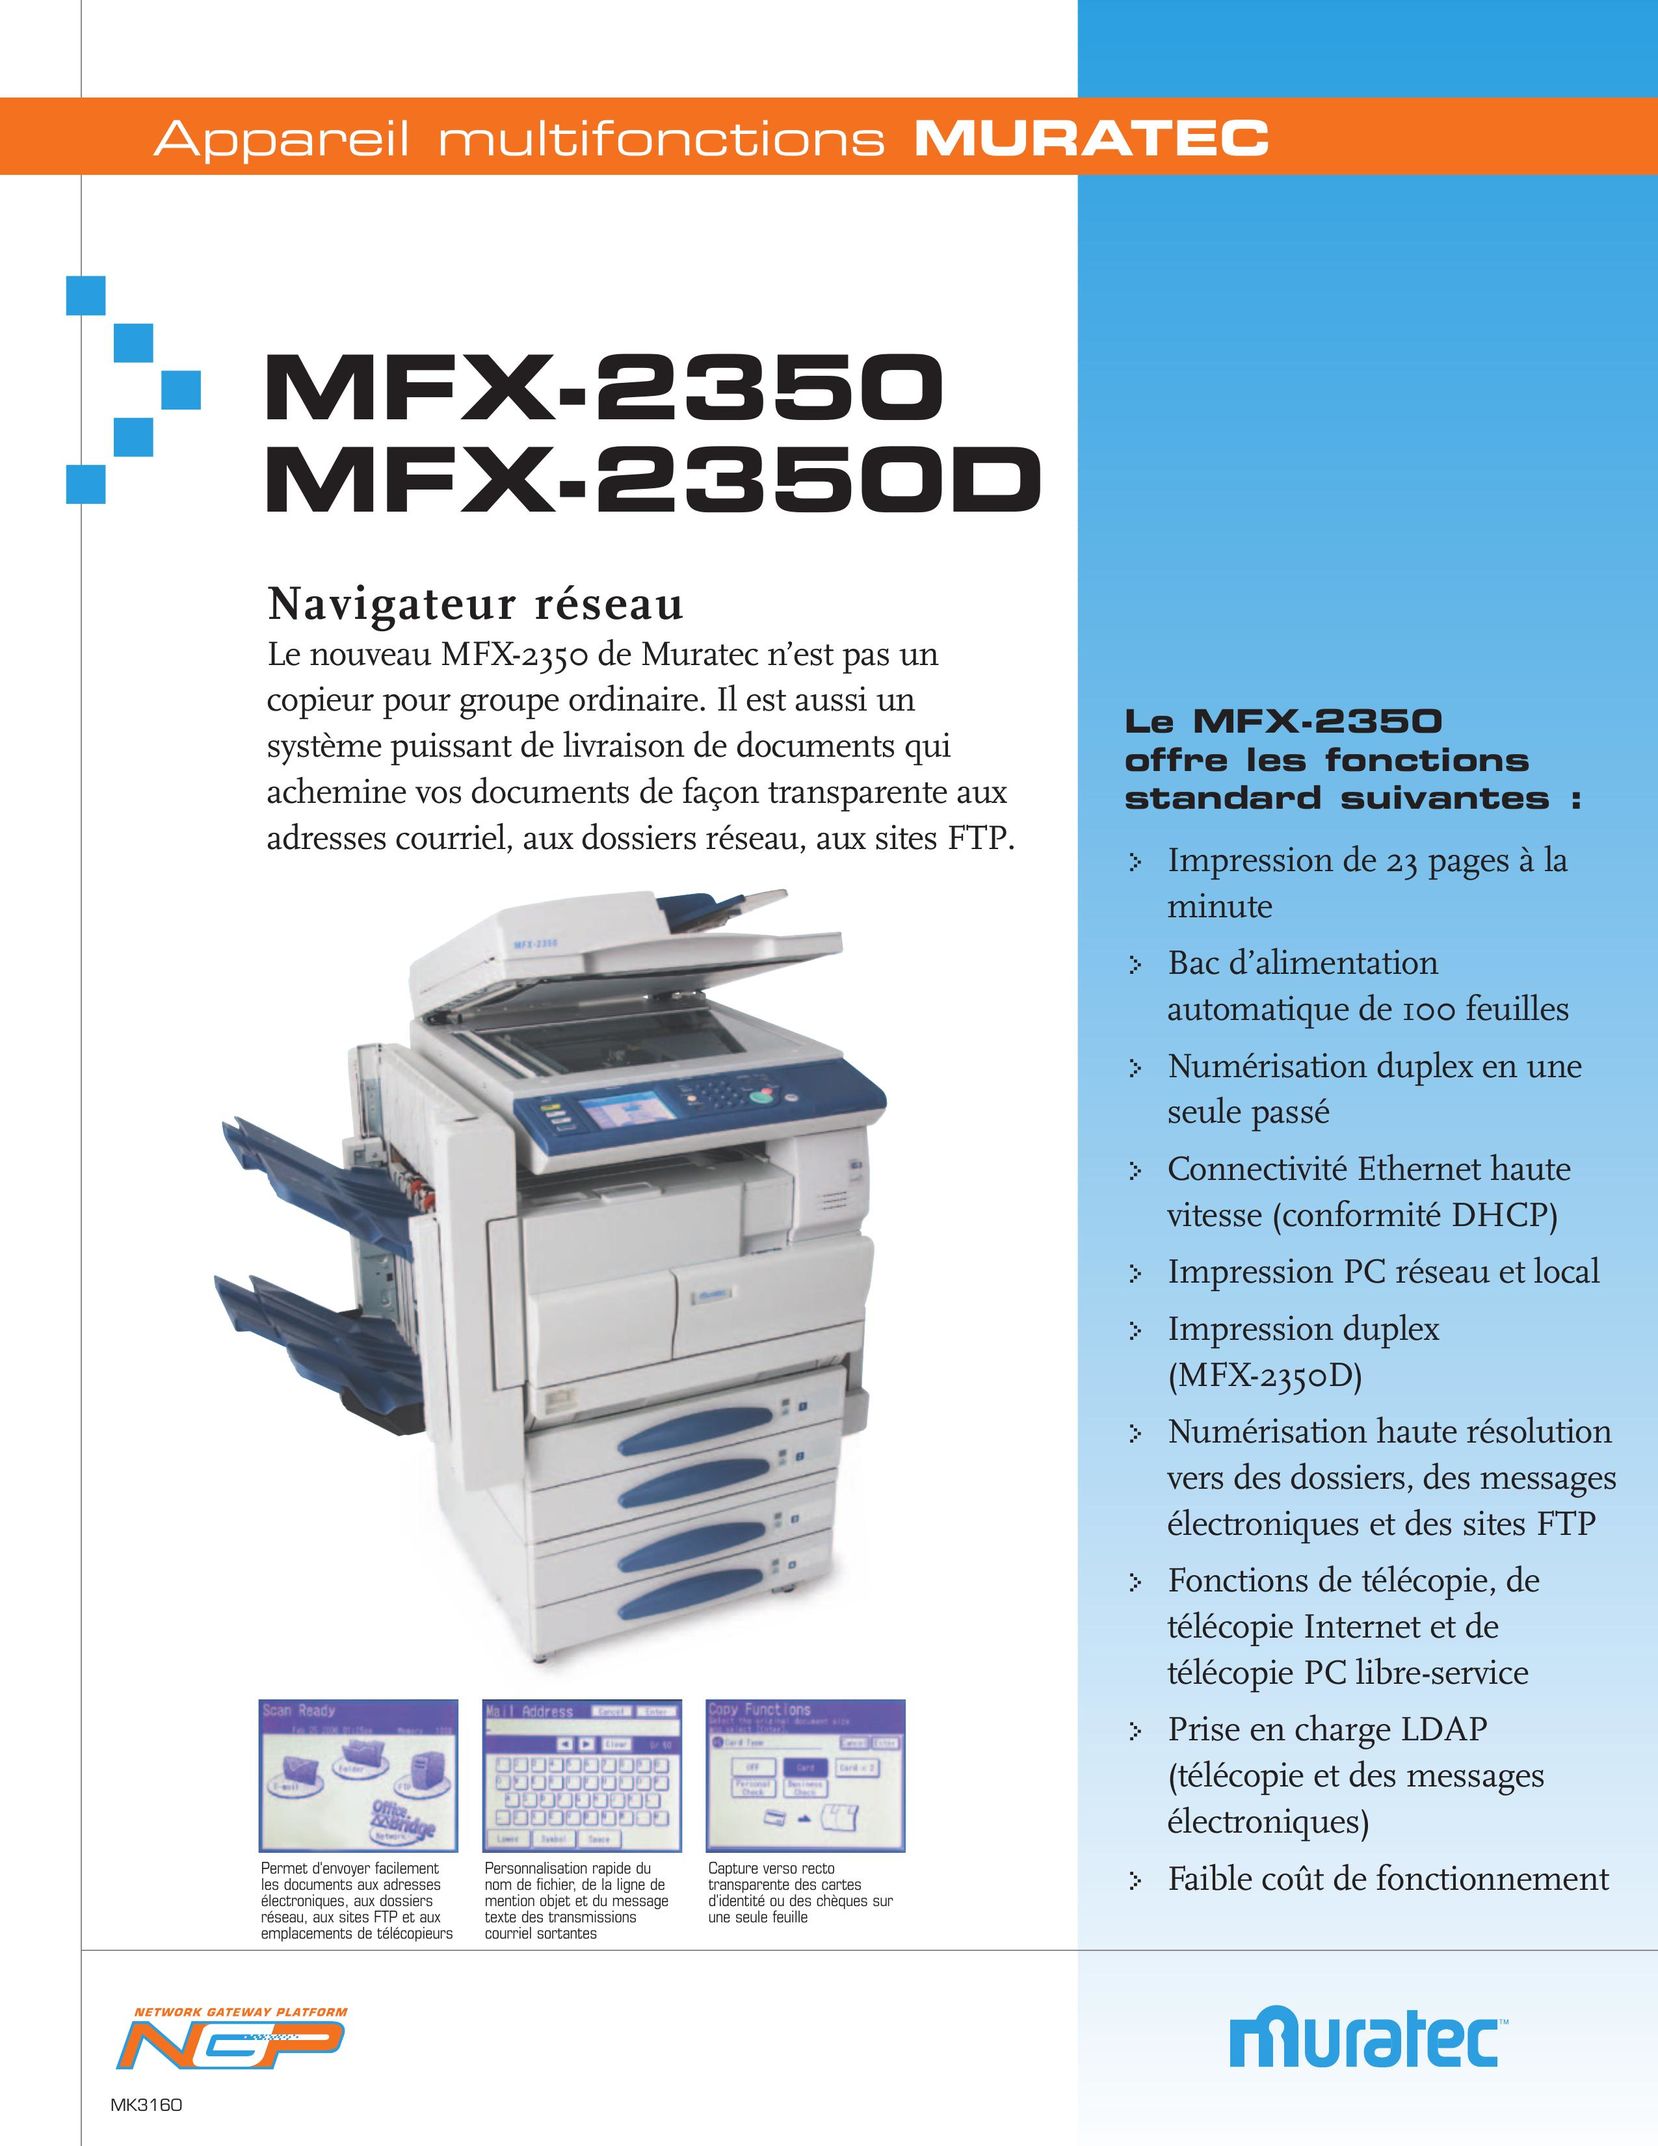 Muratec MFX-2350 All in One Printer User Manual